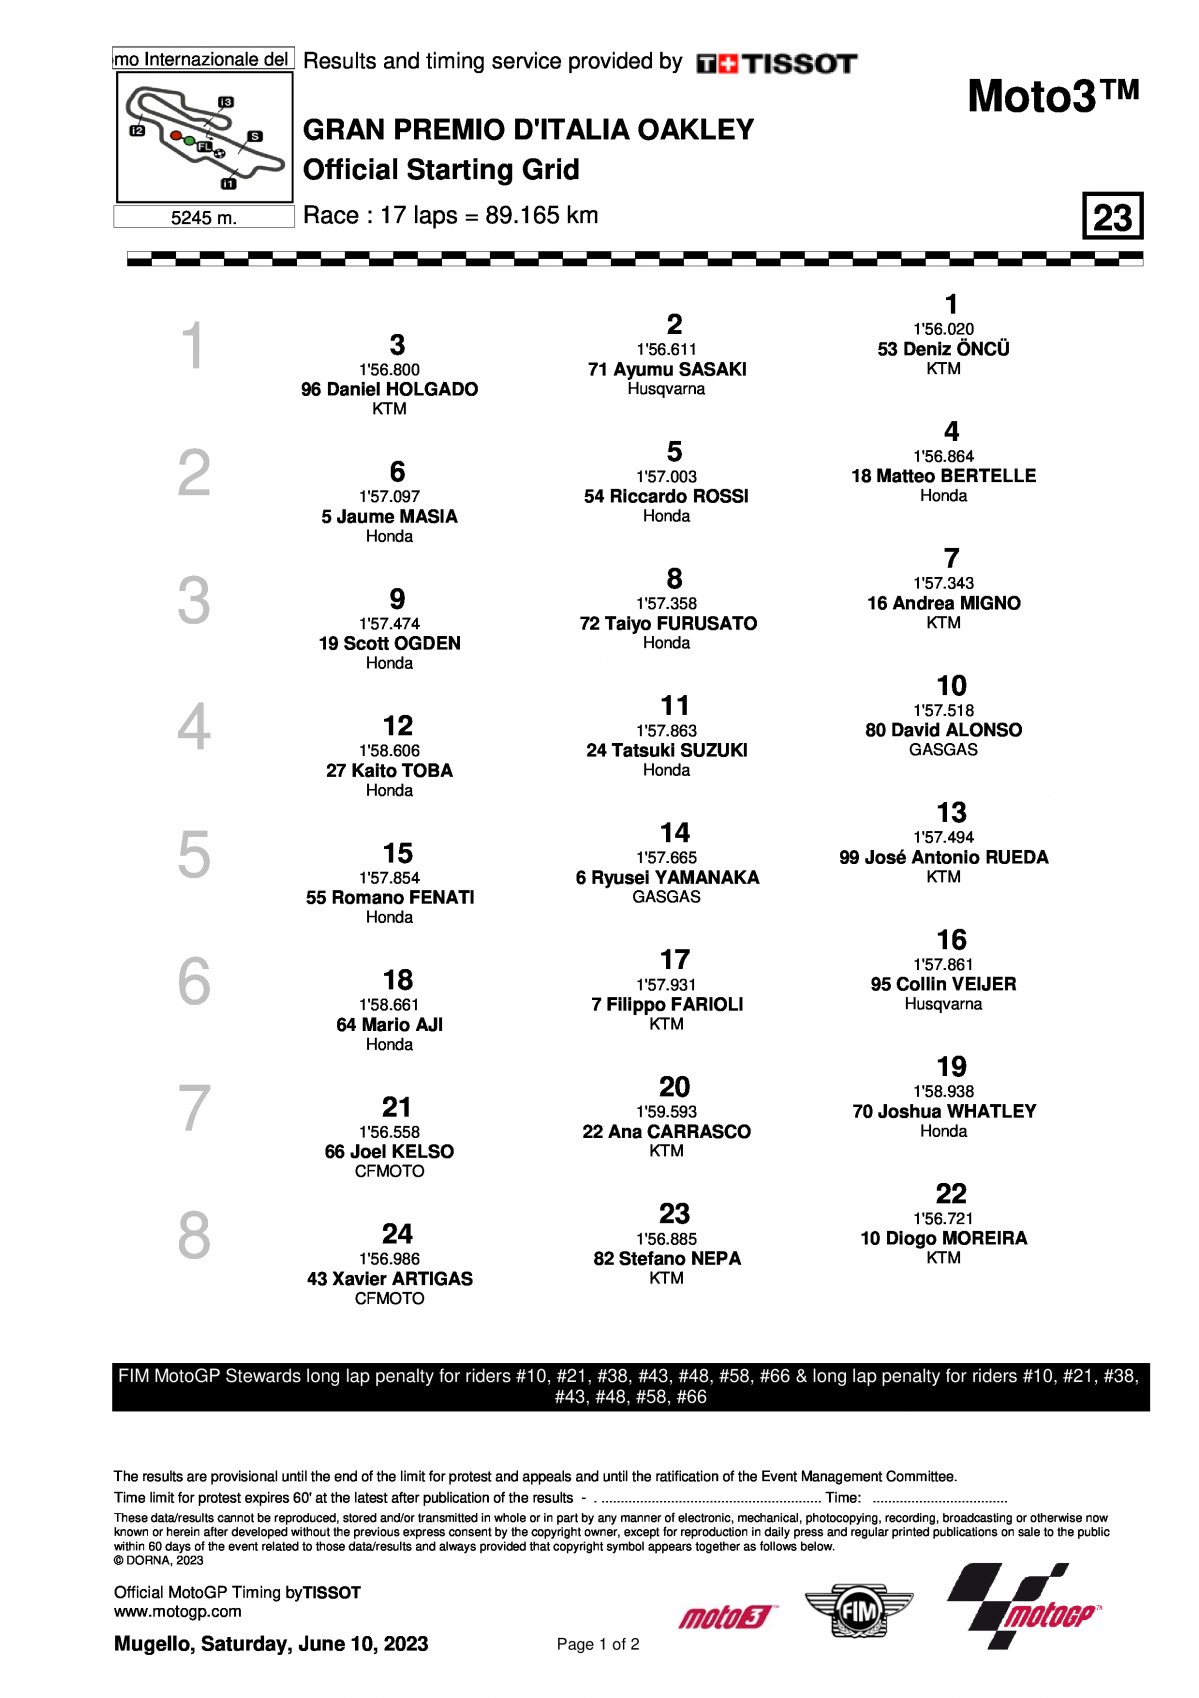 Финальная стартовая решетка Гран-При Италии Moto3 (11/06/2023)